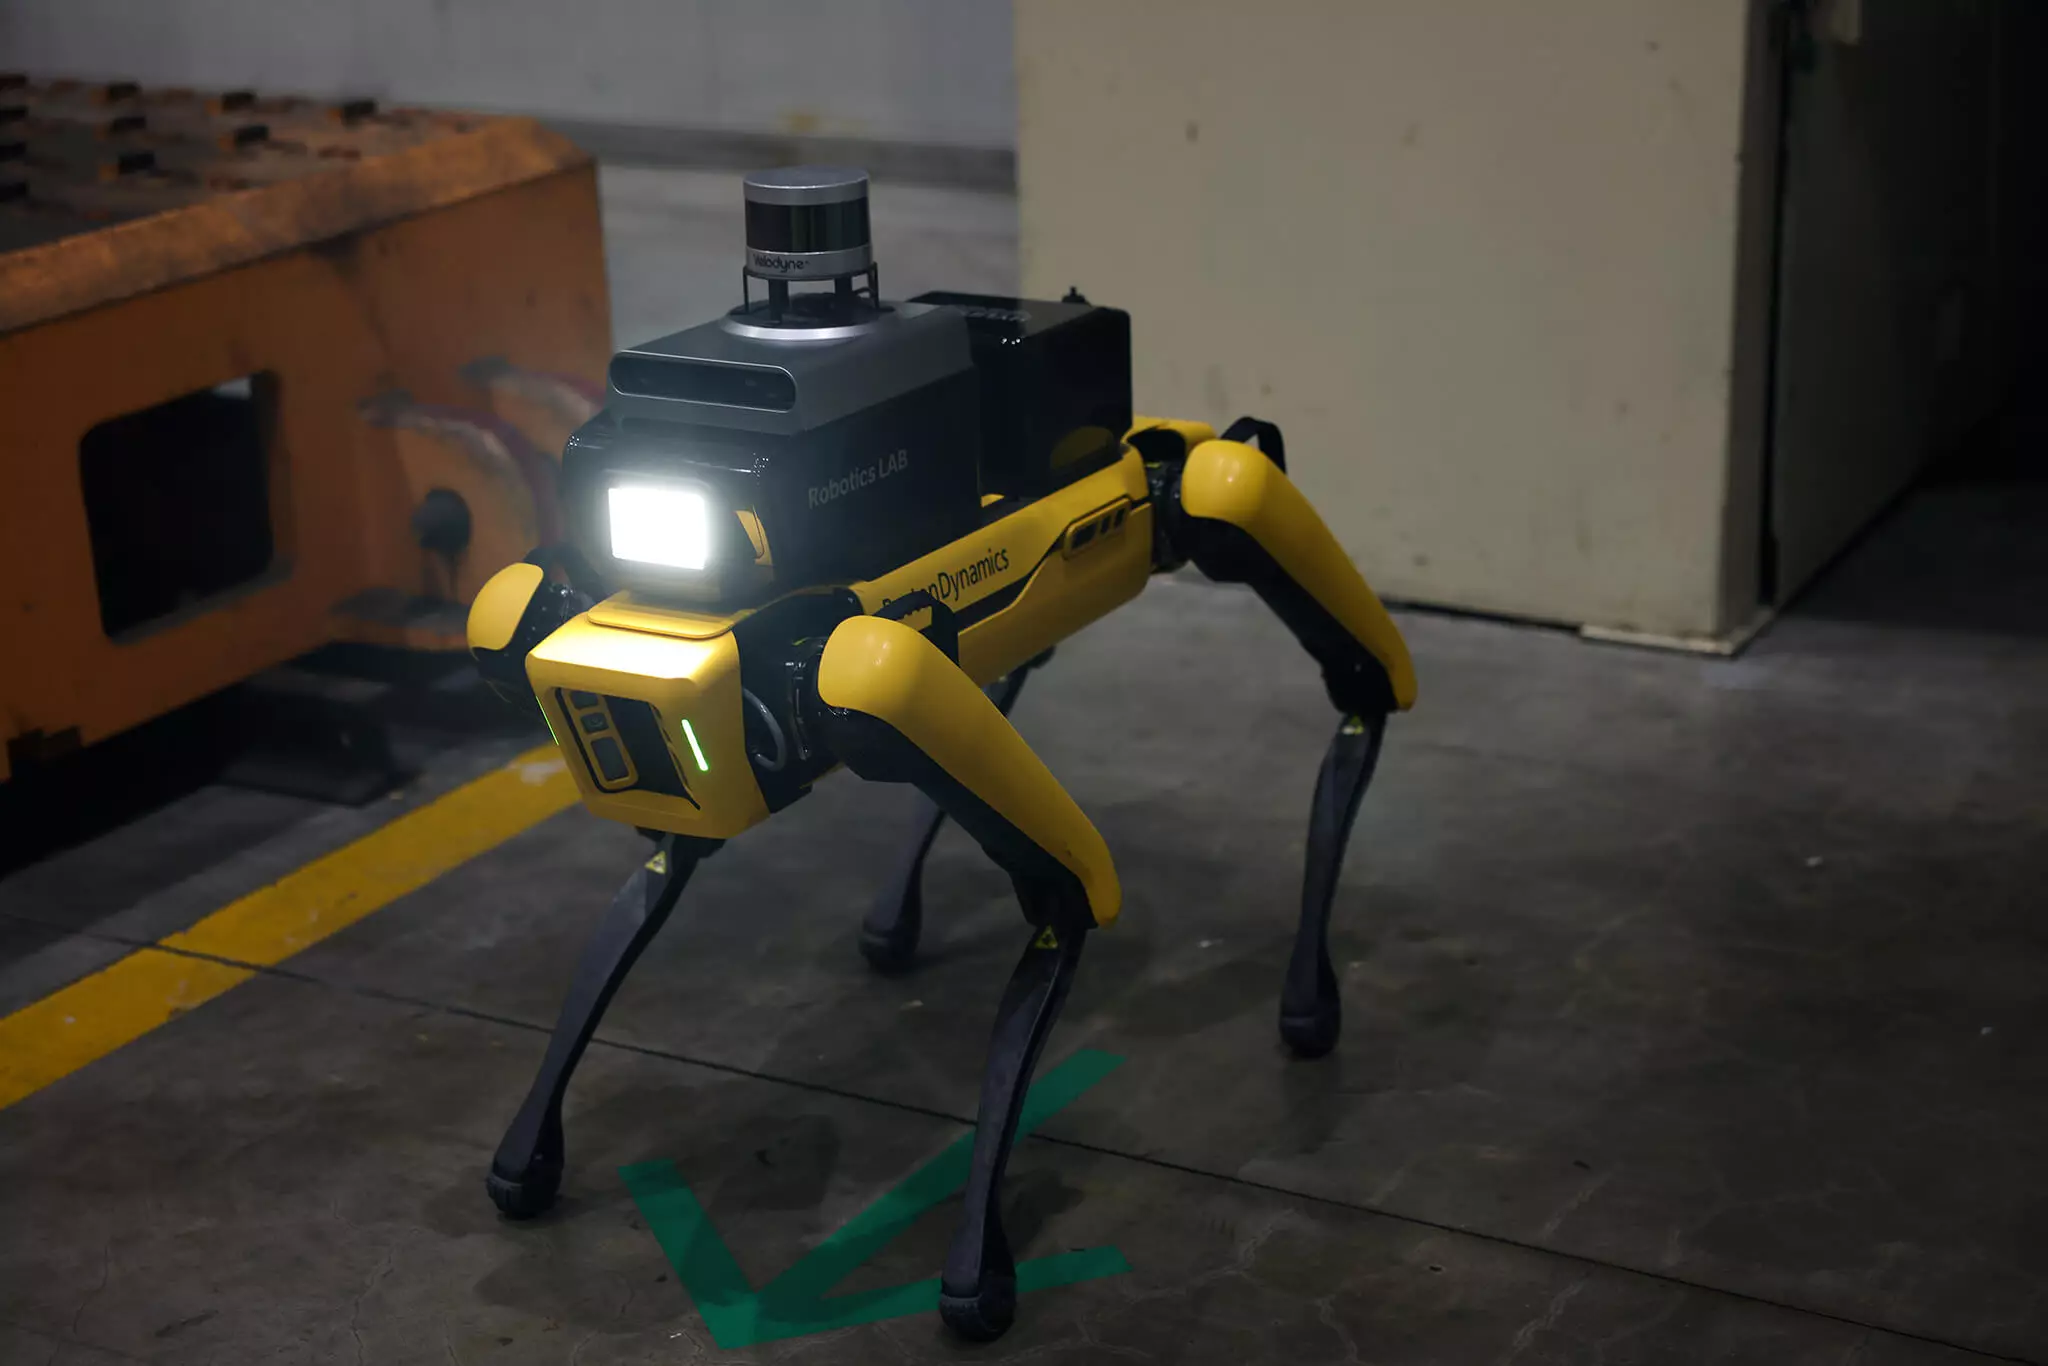 רובוט שירות בטיחות במפעל יונדאי